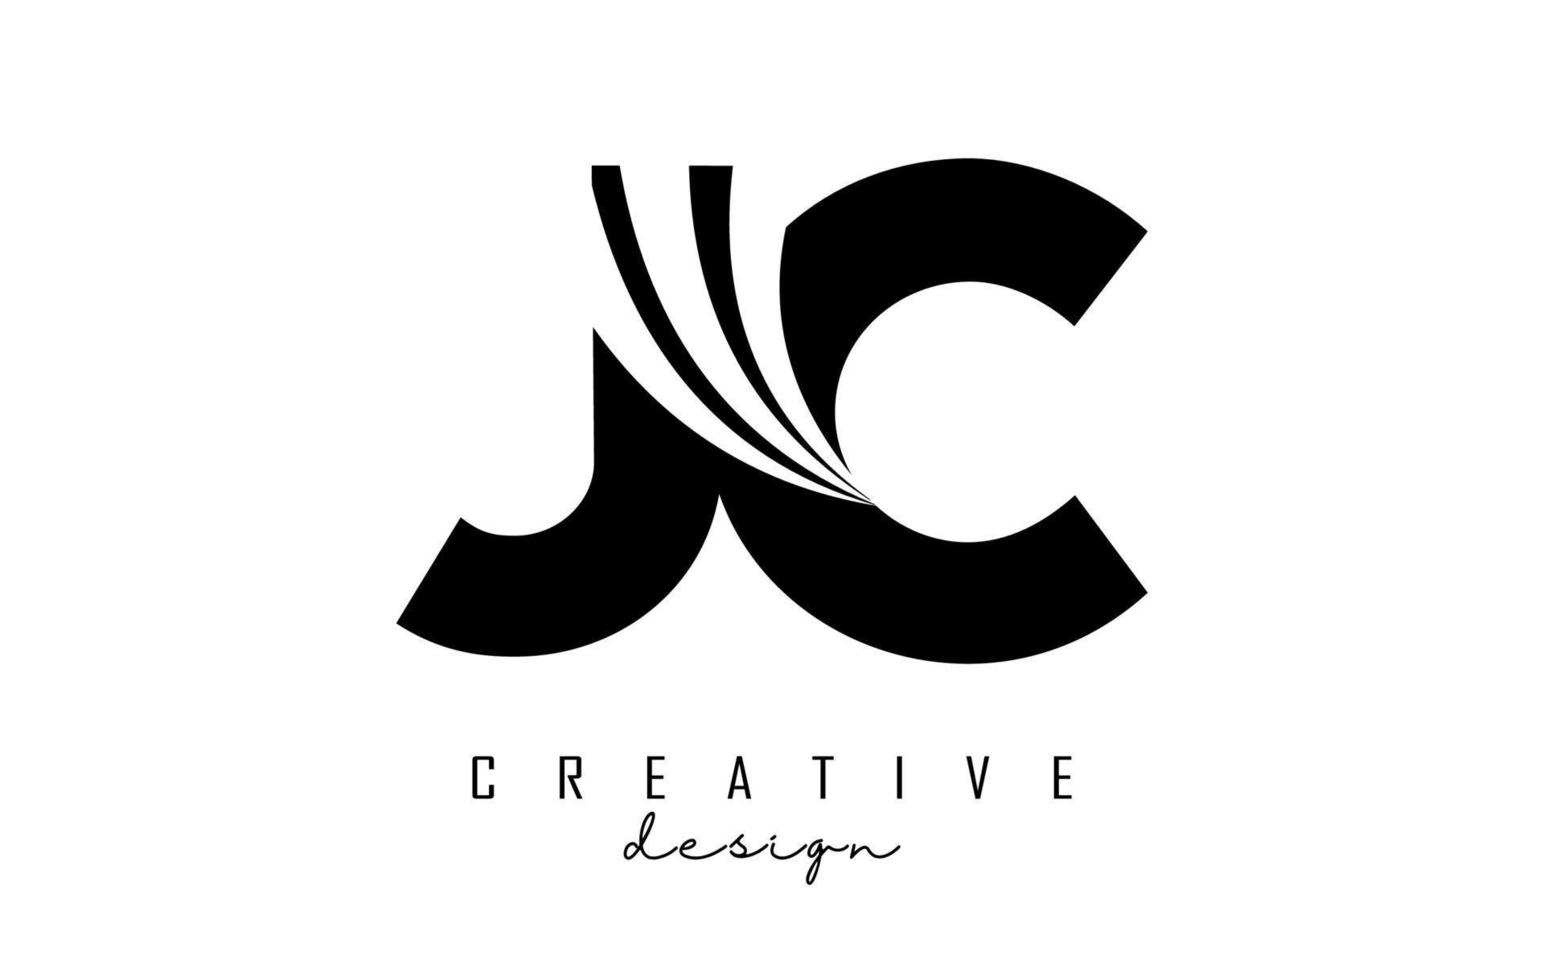 Logotipo creativo de letras negras jc jc con líneas principales y diseño de concepto de carretera. letras con diseño geométrico. vector